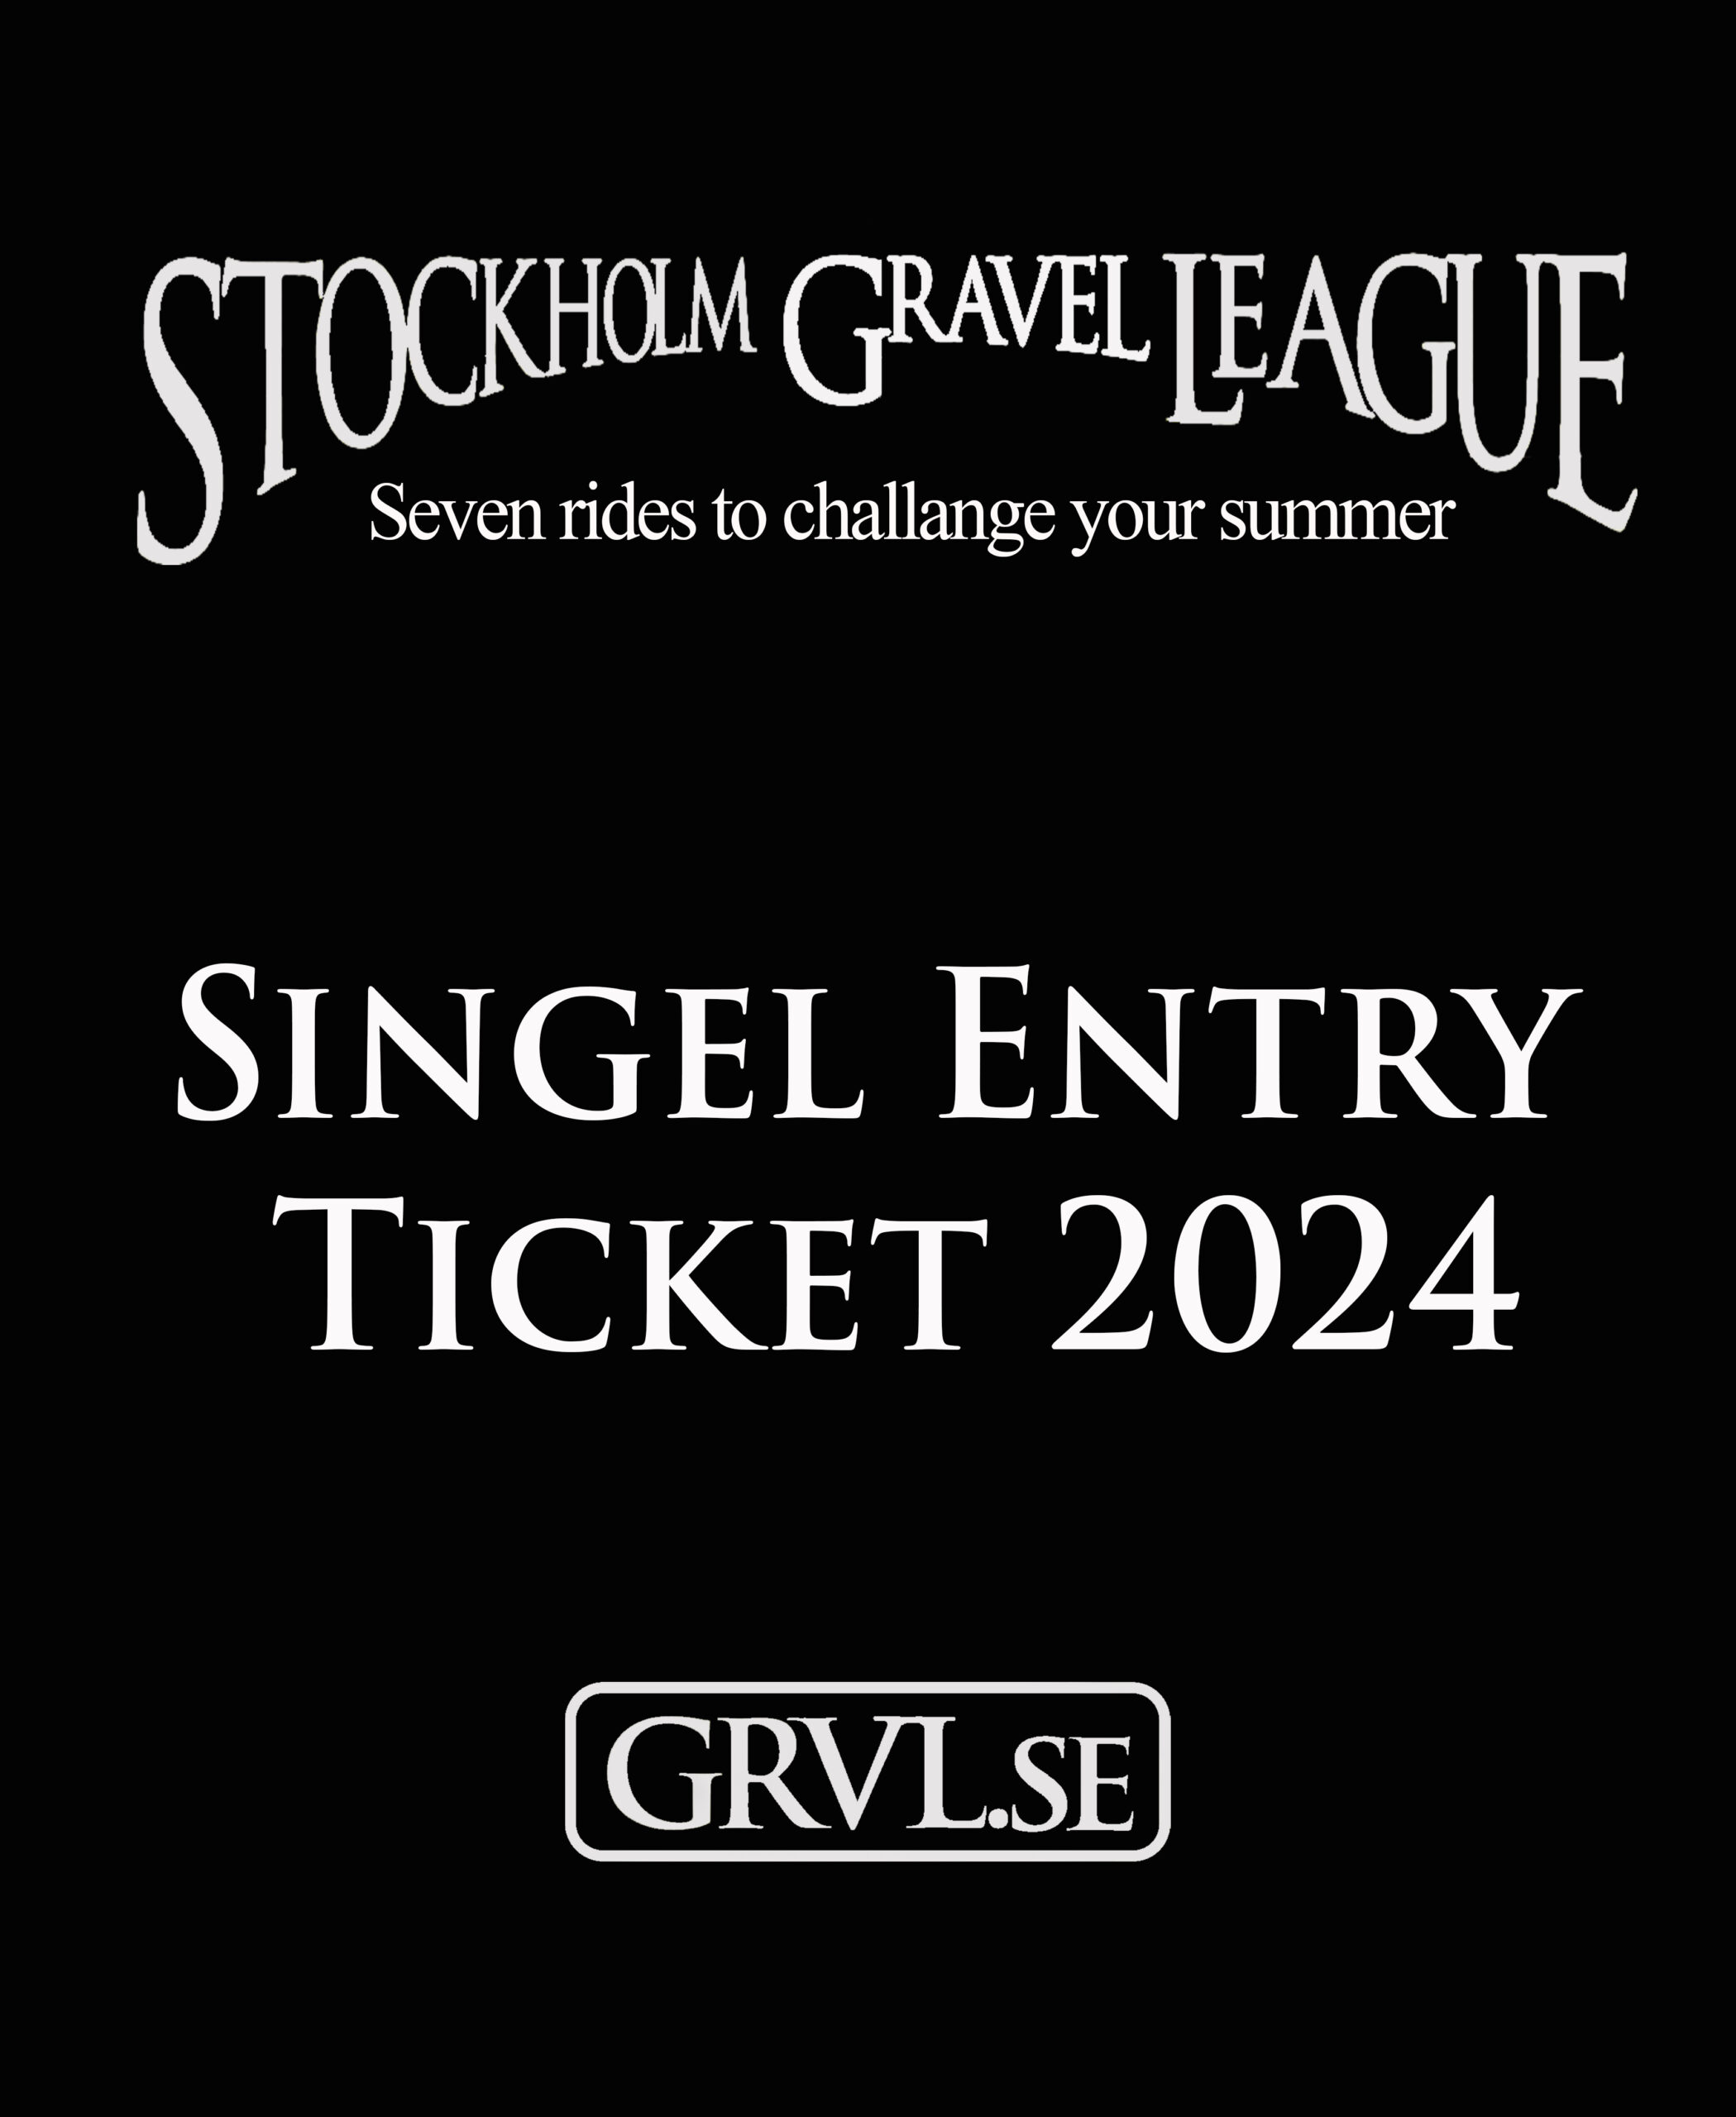 Stockholm Gravel League Ticket